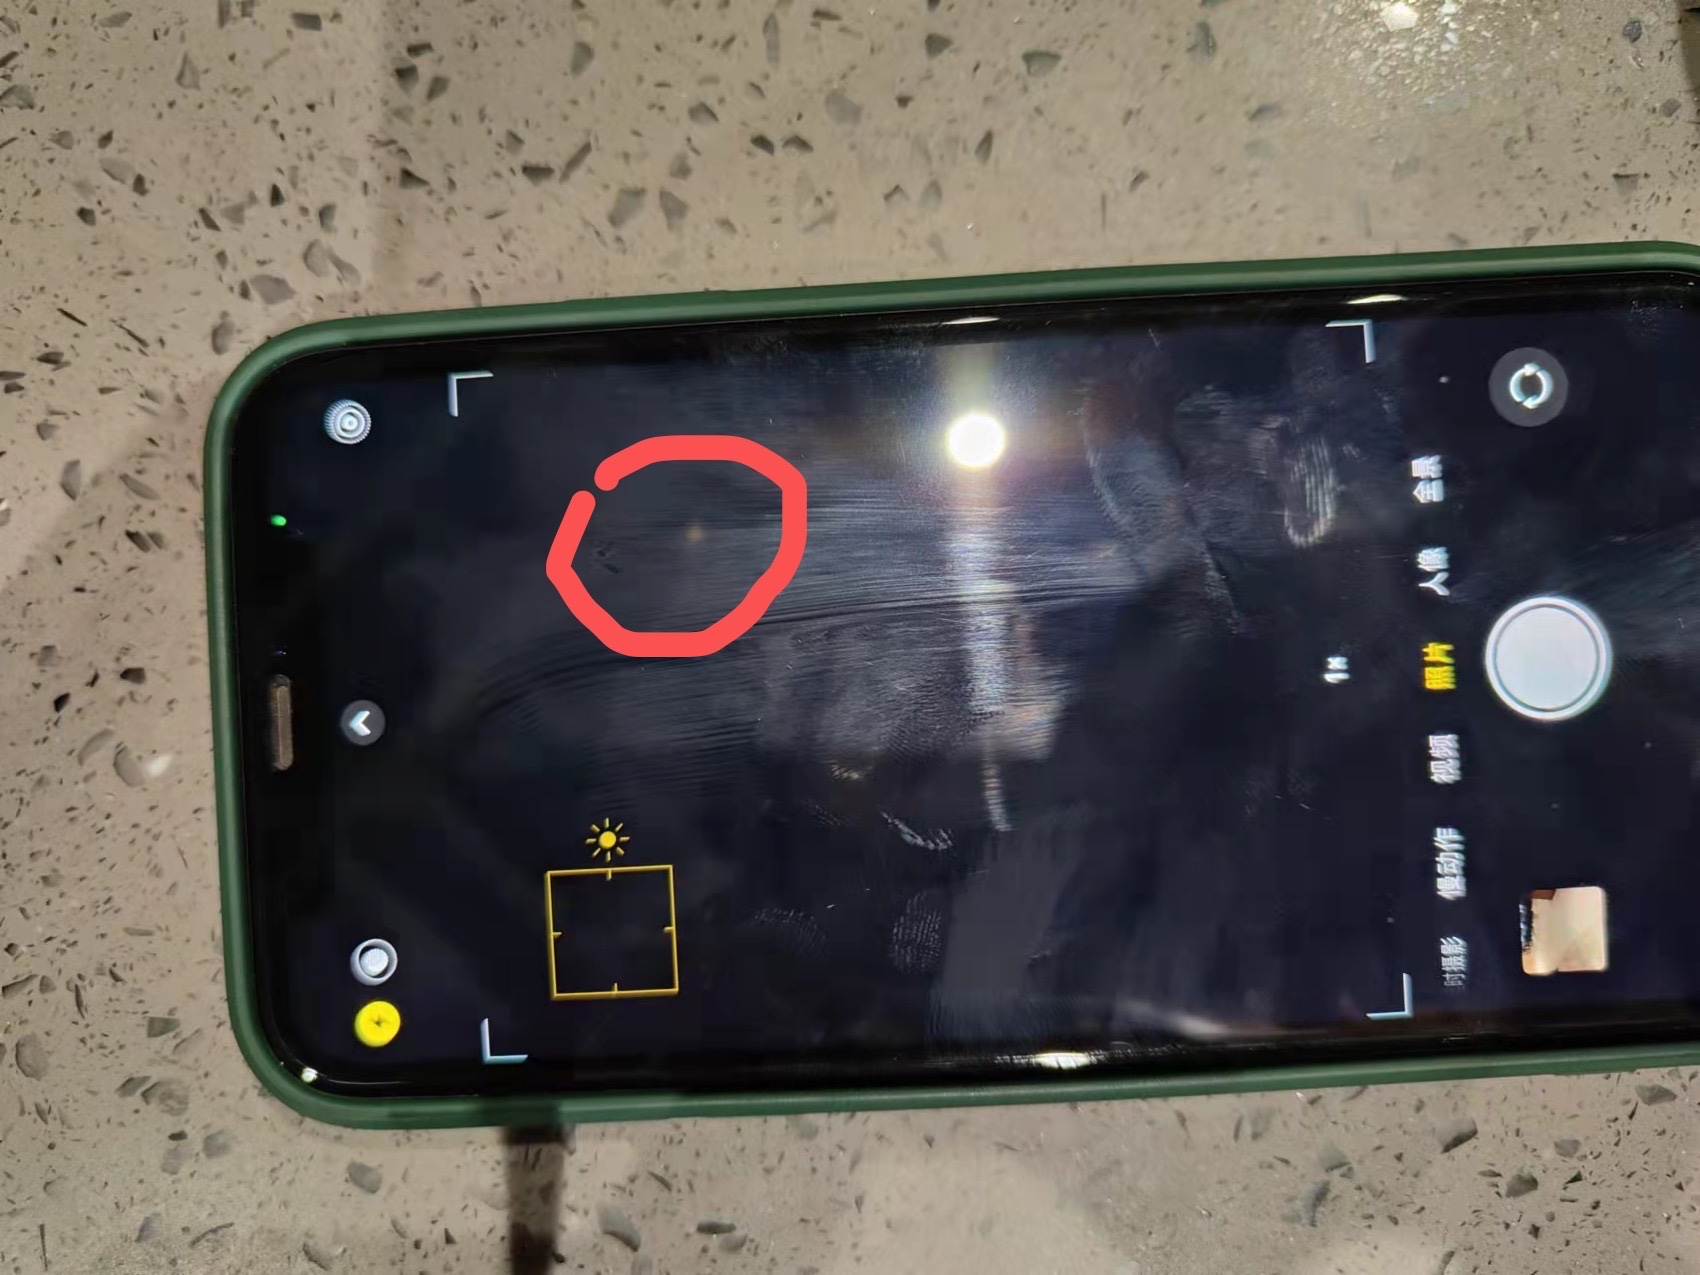 问题问屏幕出现问题帮忙看一下红圈里面的那个亮点是什么情况